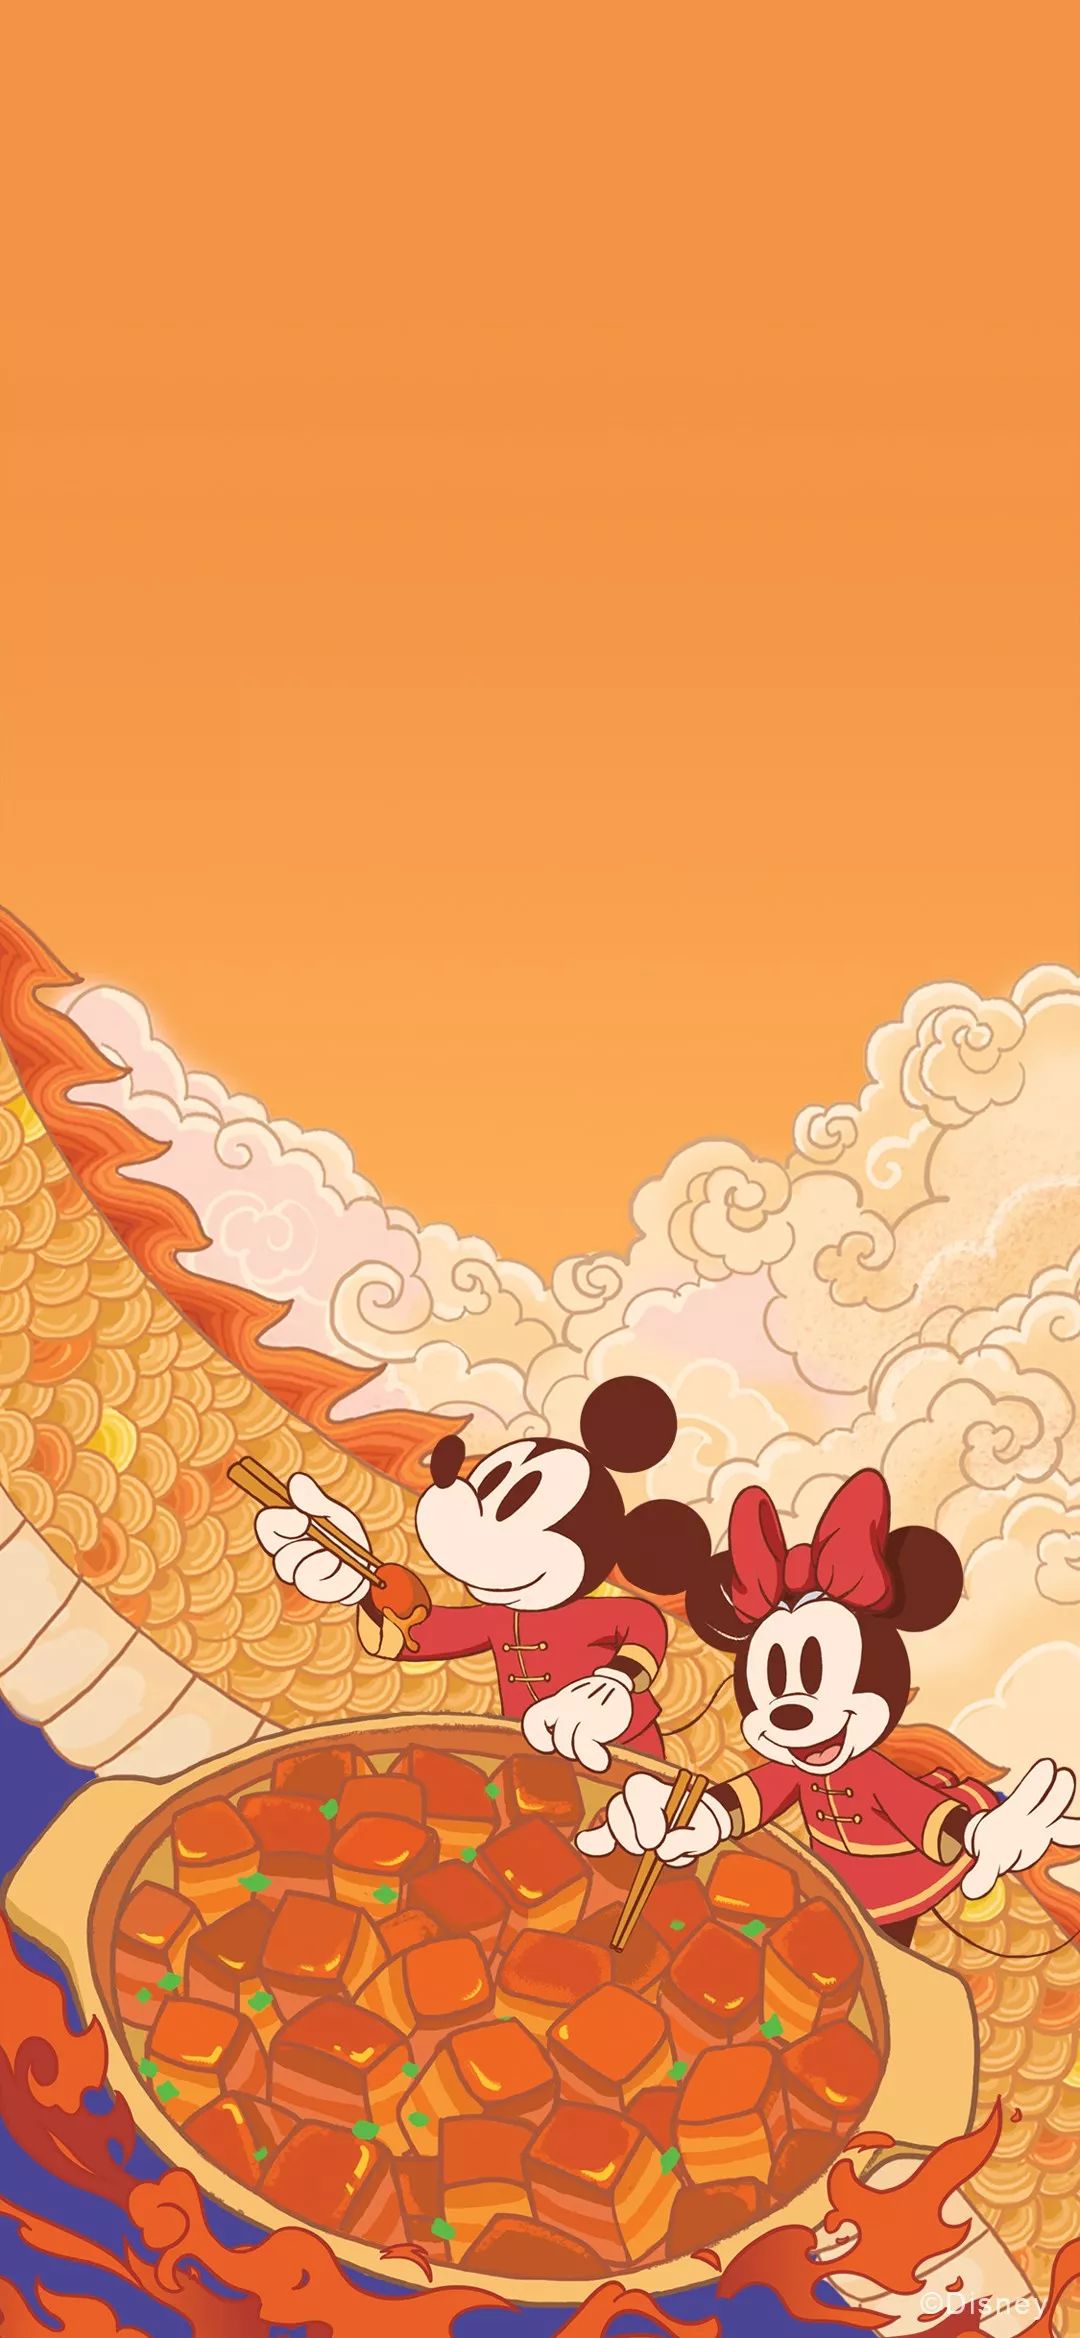 迪士尼鼠年壁纸大放送!